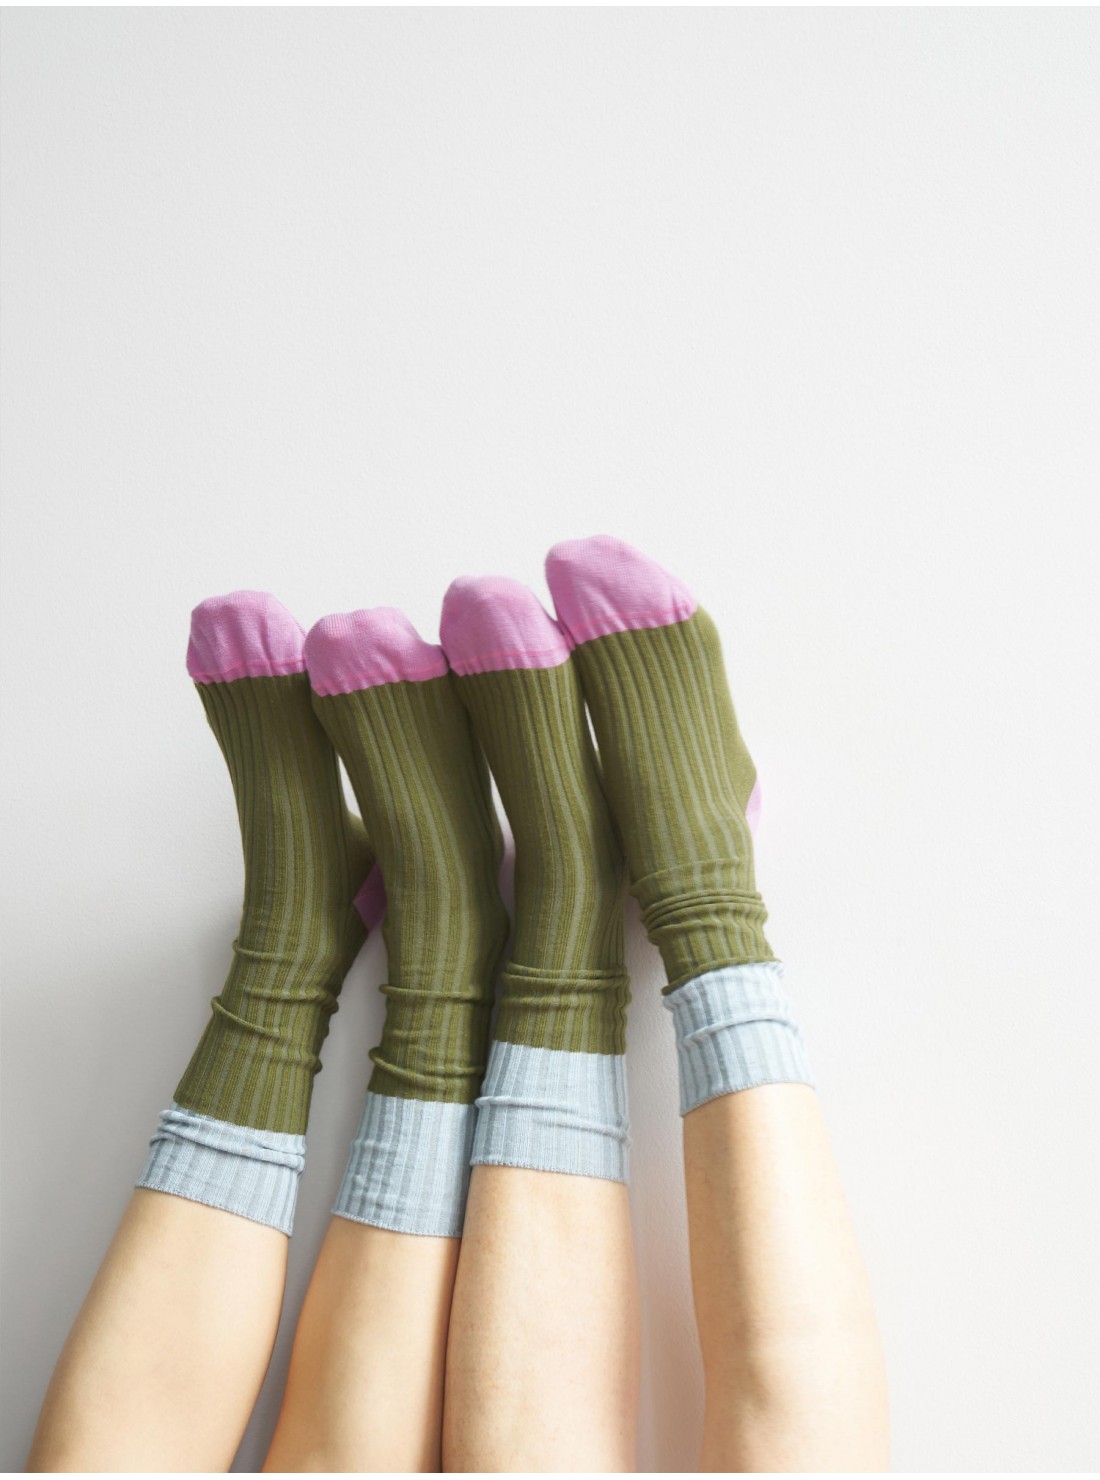 chaussettes coton tricolore vert bleu rose unisexe